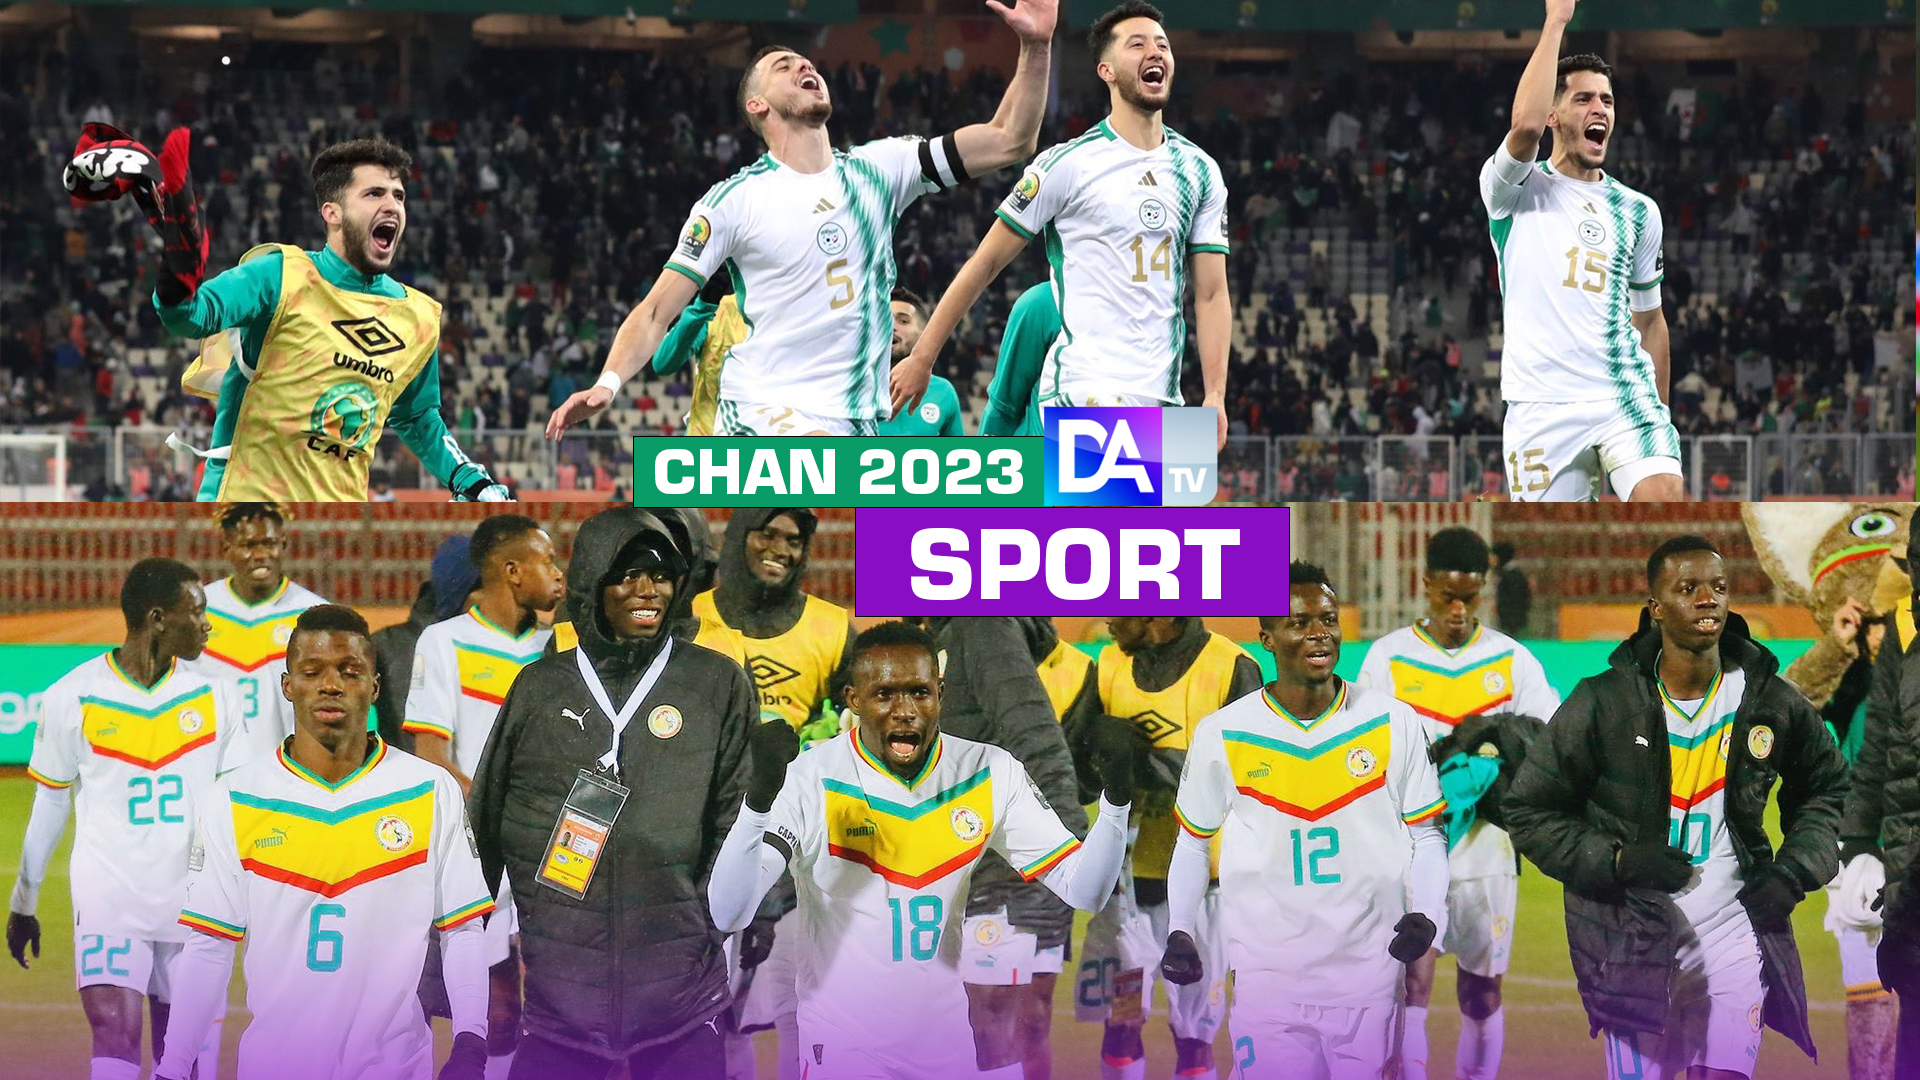 Chan 2023 : Qualification historique du Sénégal qui retrouve l’Algérie en finale !